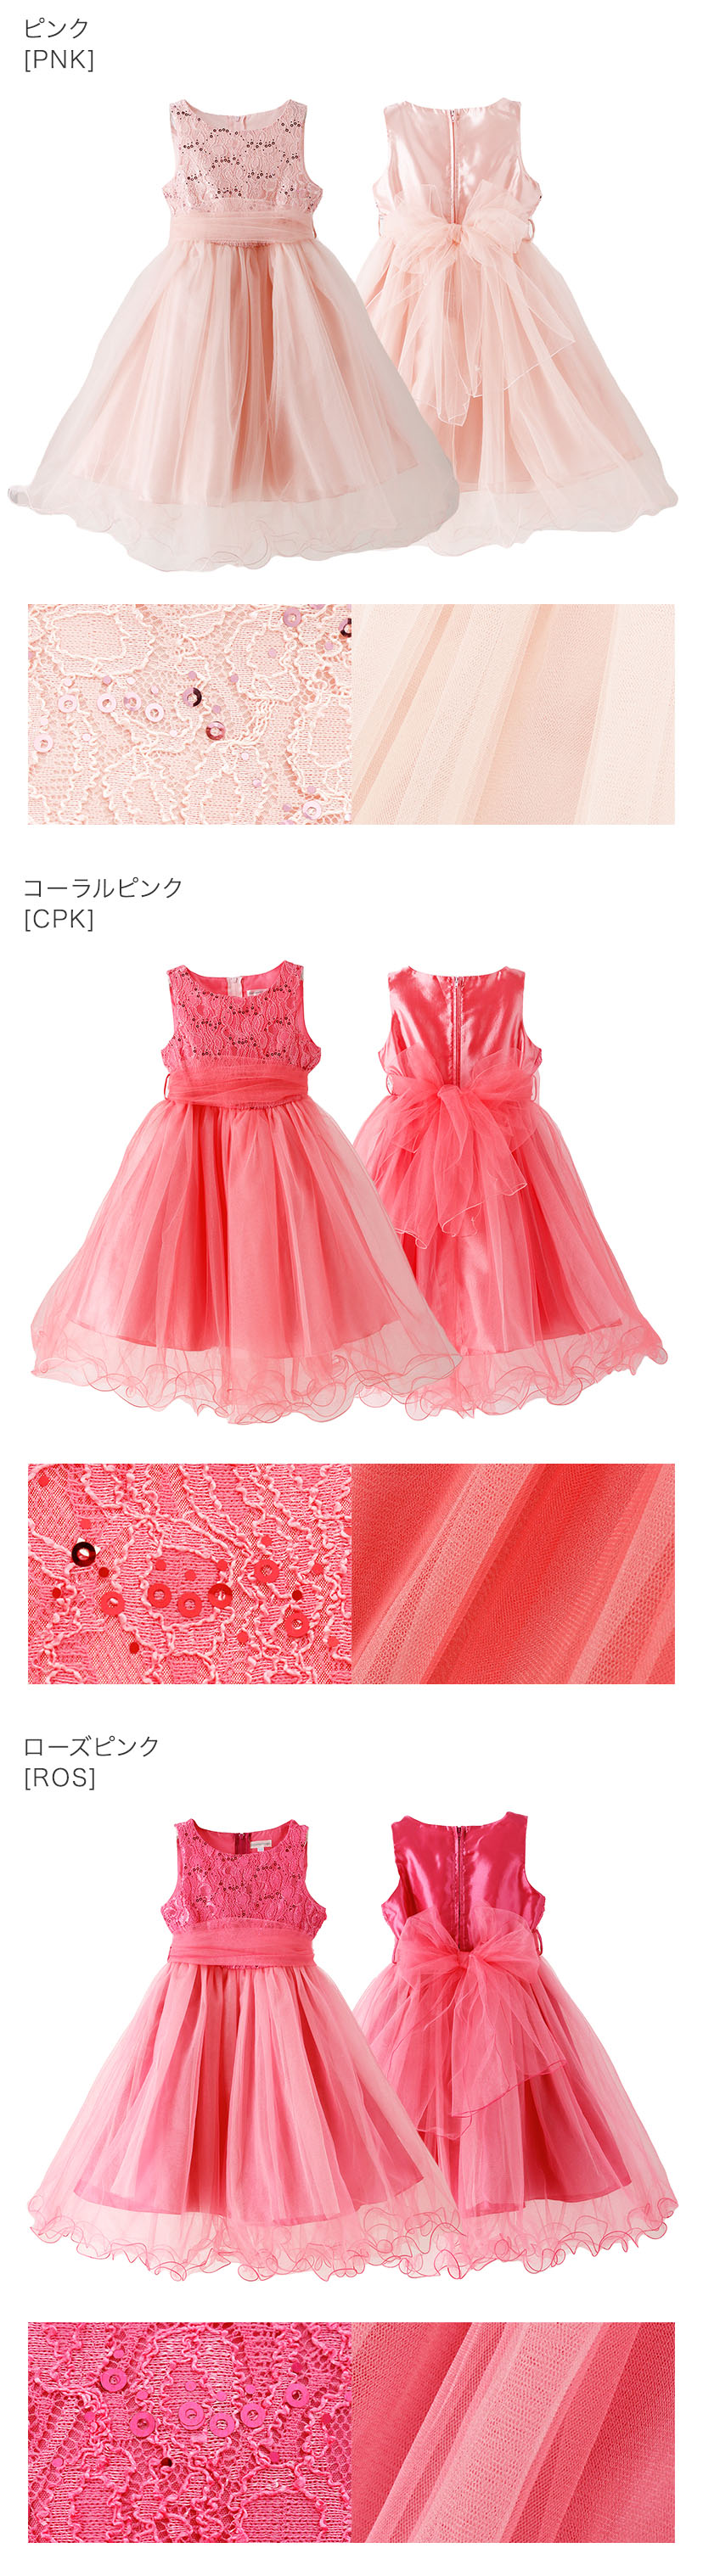 子供ドレス コスパ重視派のスパンコールレースチュールドレス キッズドレス ピンク コーラルピンク ローズピンク